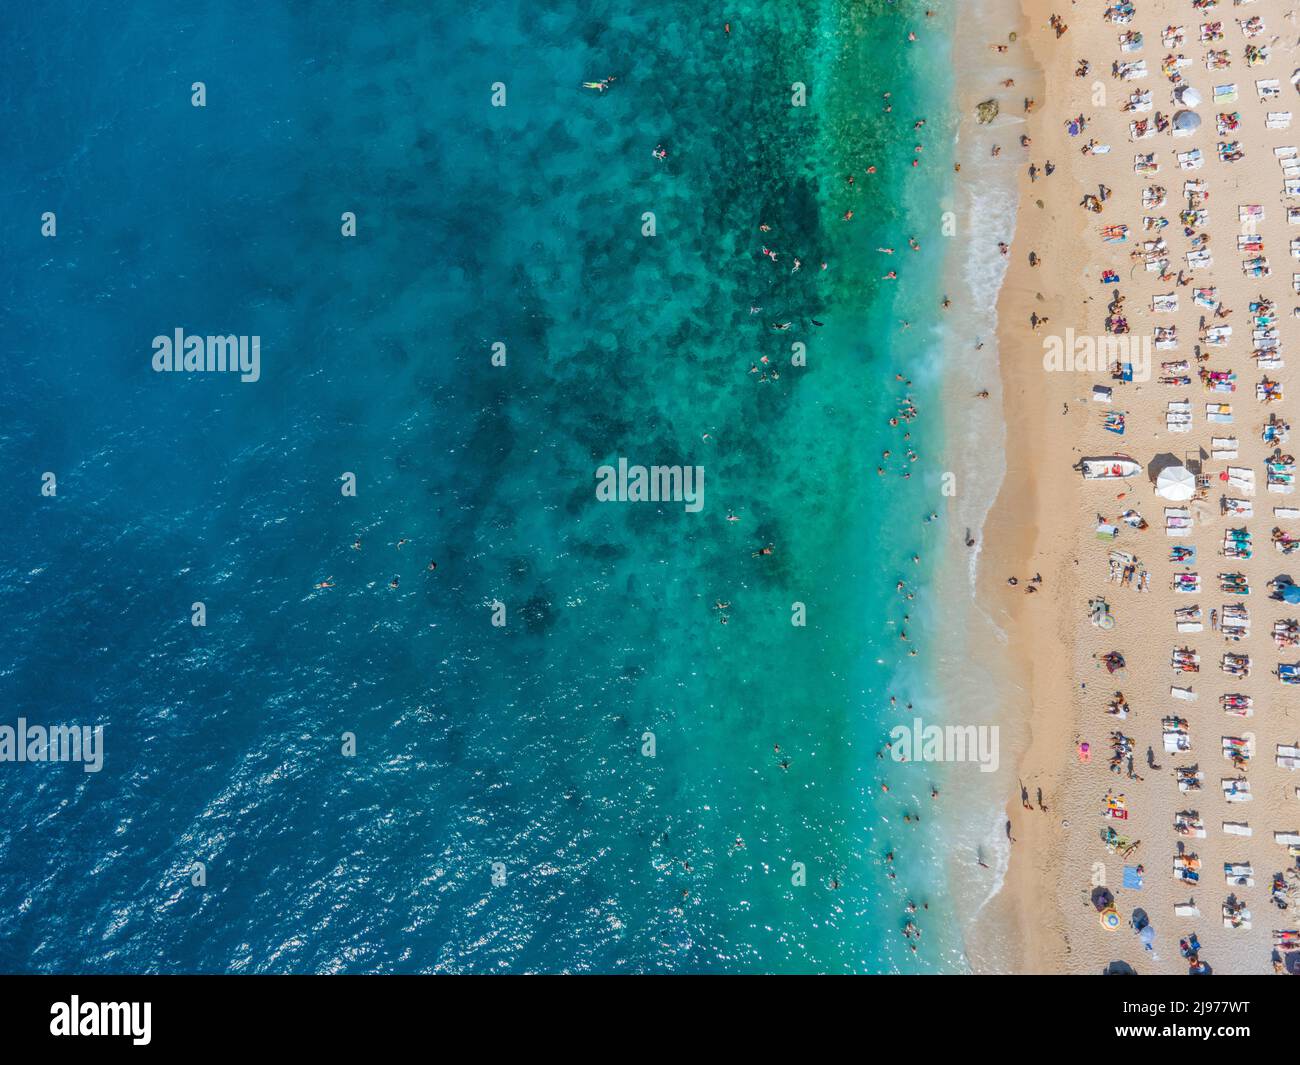 Images de drone de personnes bronzer sur la plage de Kaputaş, près de Kalkan - Kaş, Antalya, Turquie Banque D'Images